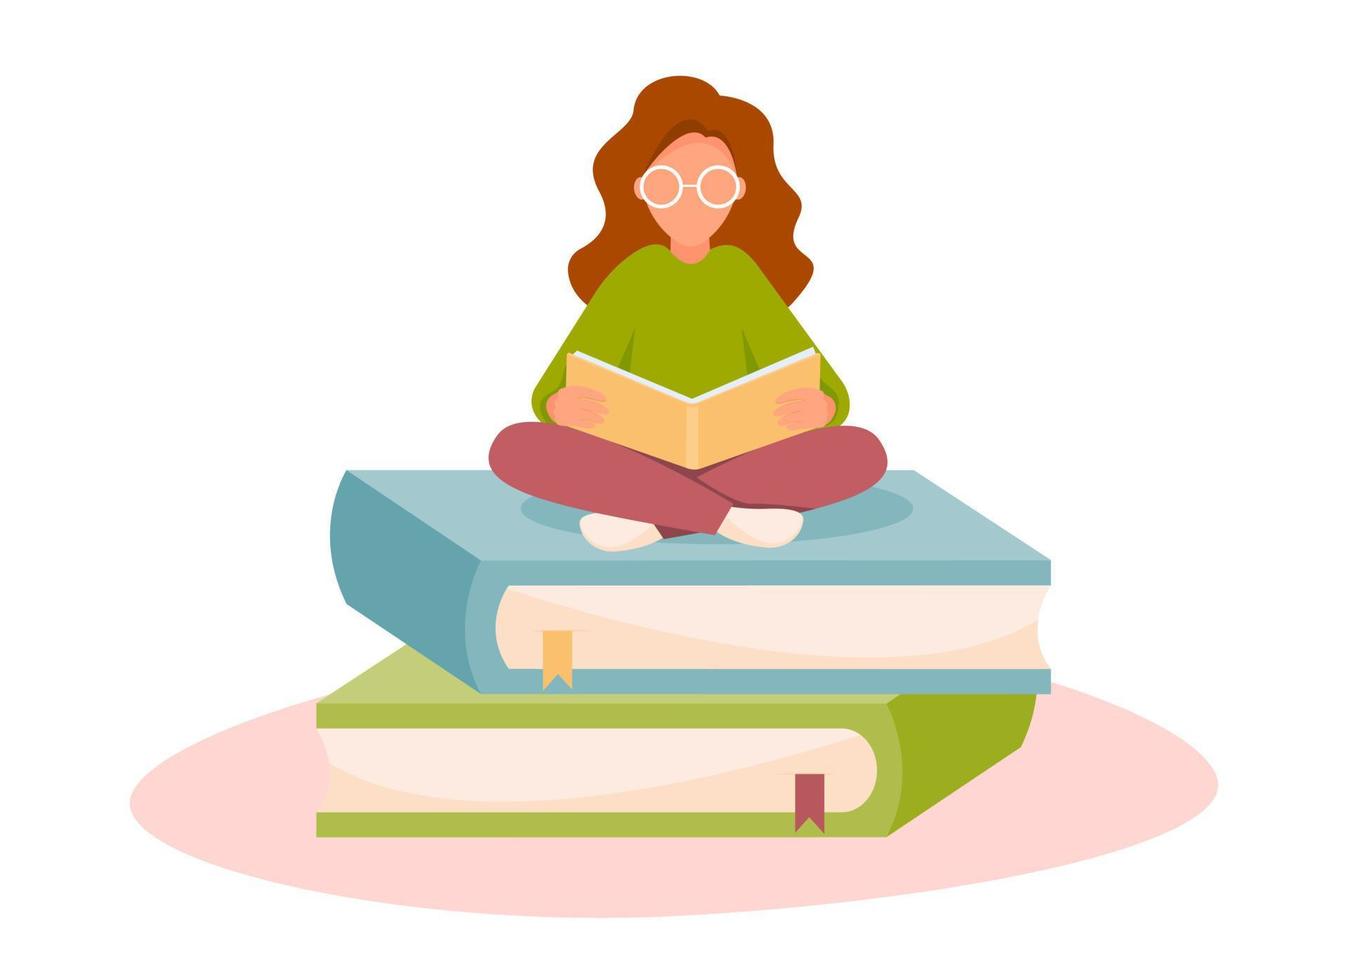 menina sentada na pilha de livros e lendo. conceito de aprendizagem, educação, conhecimento, hobby. ilustração vetorial em estilo simples. vetor